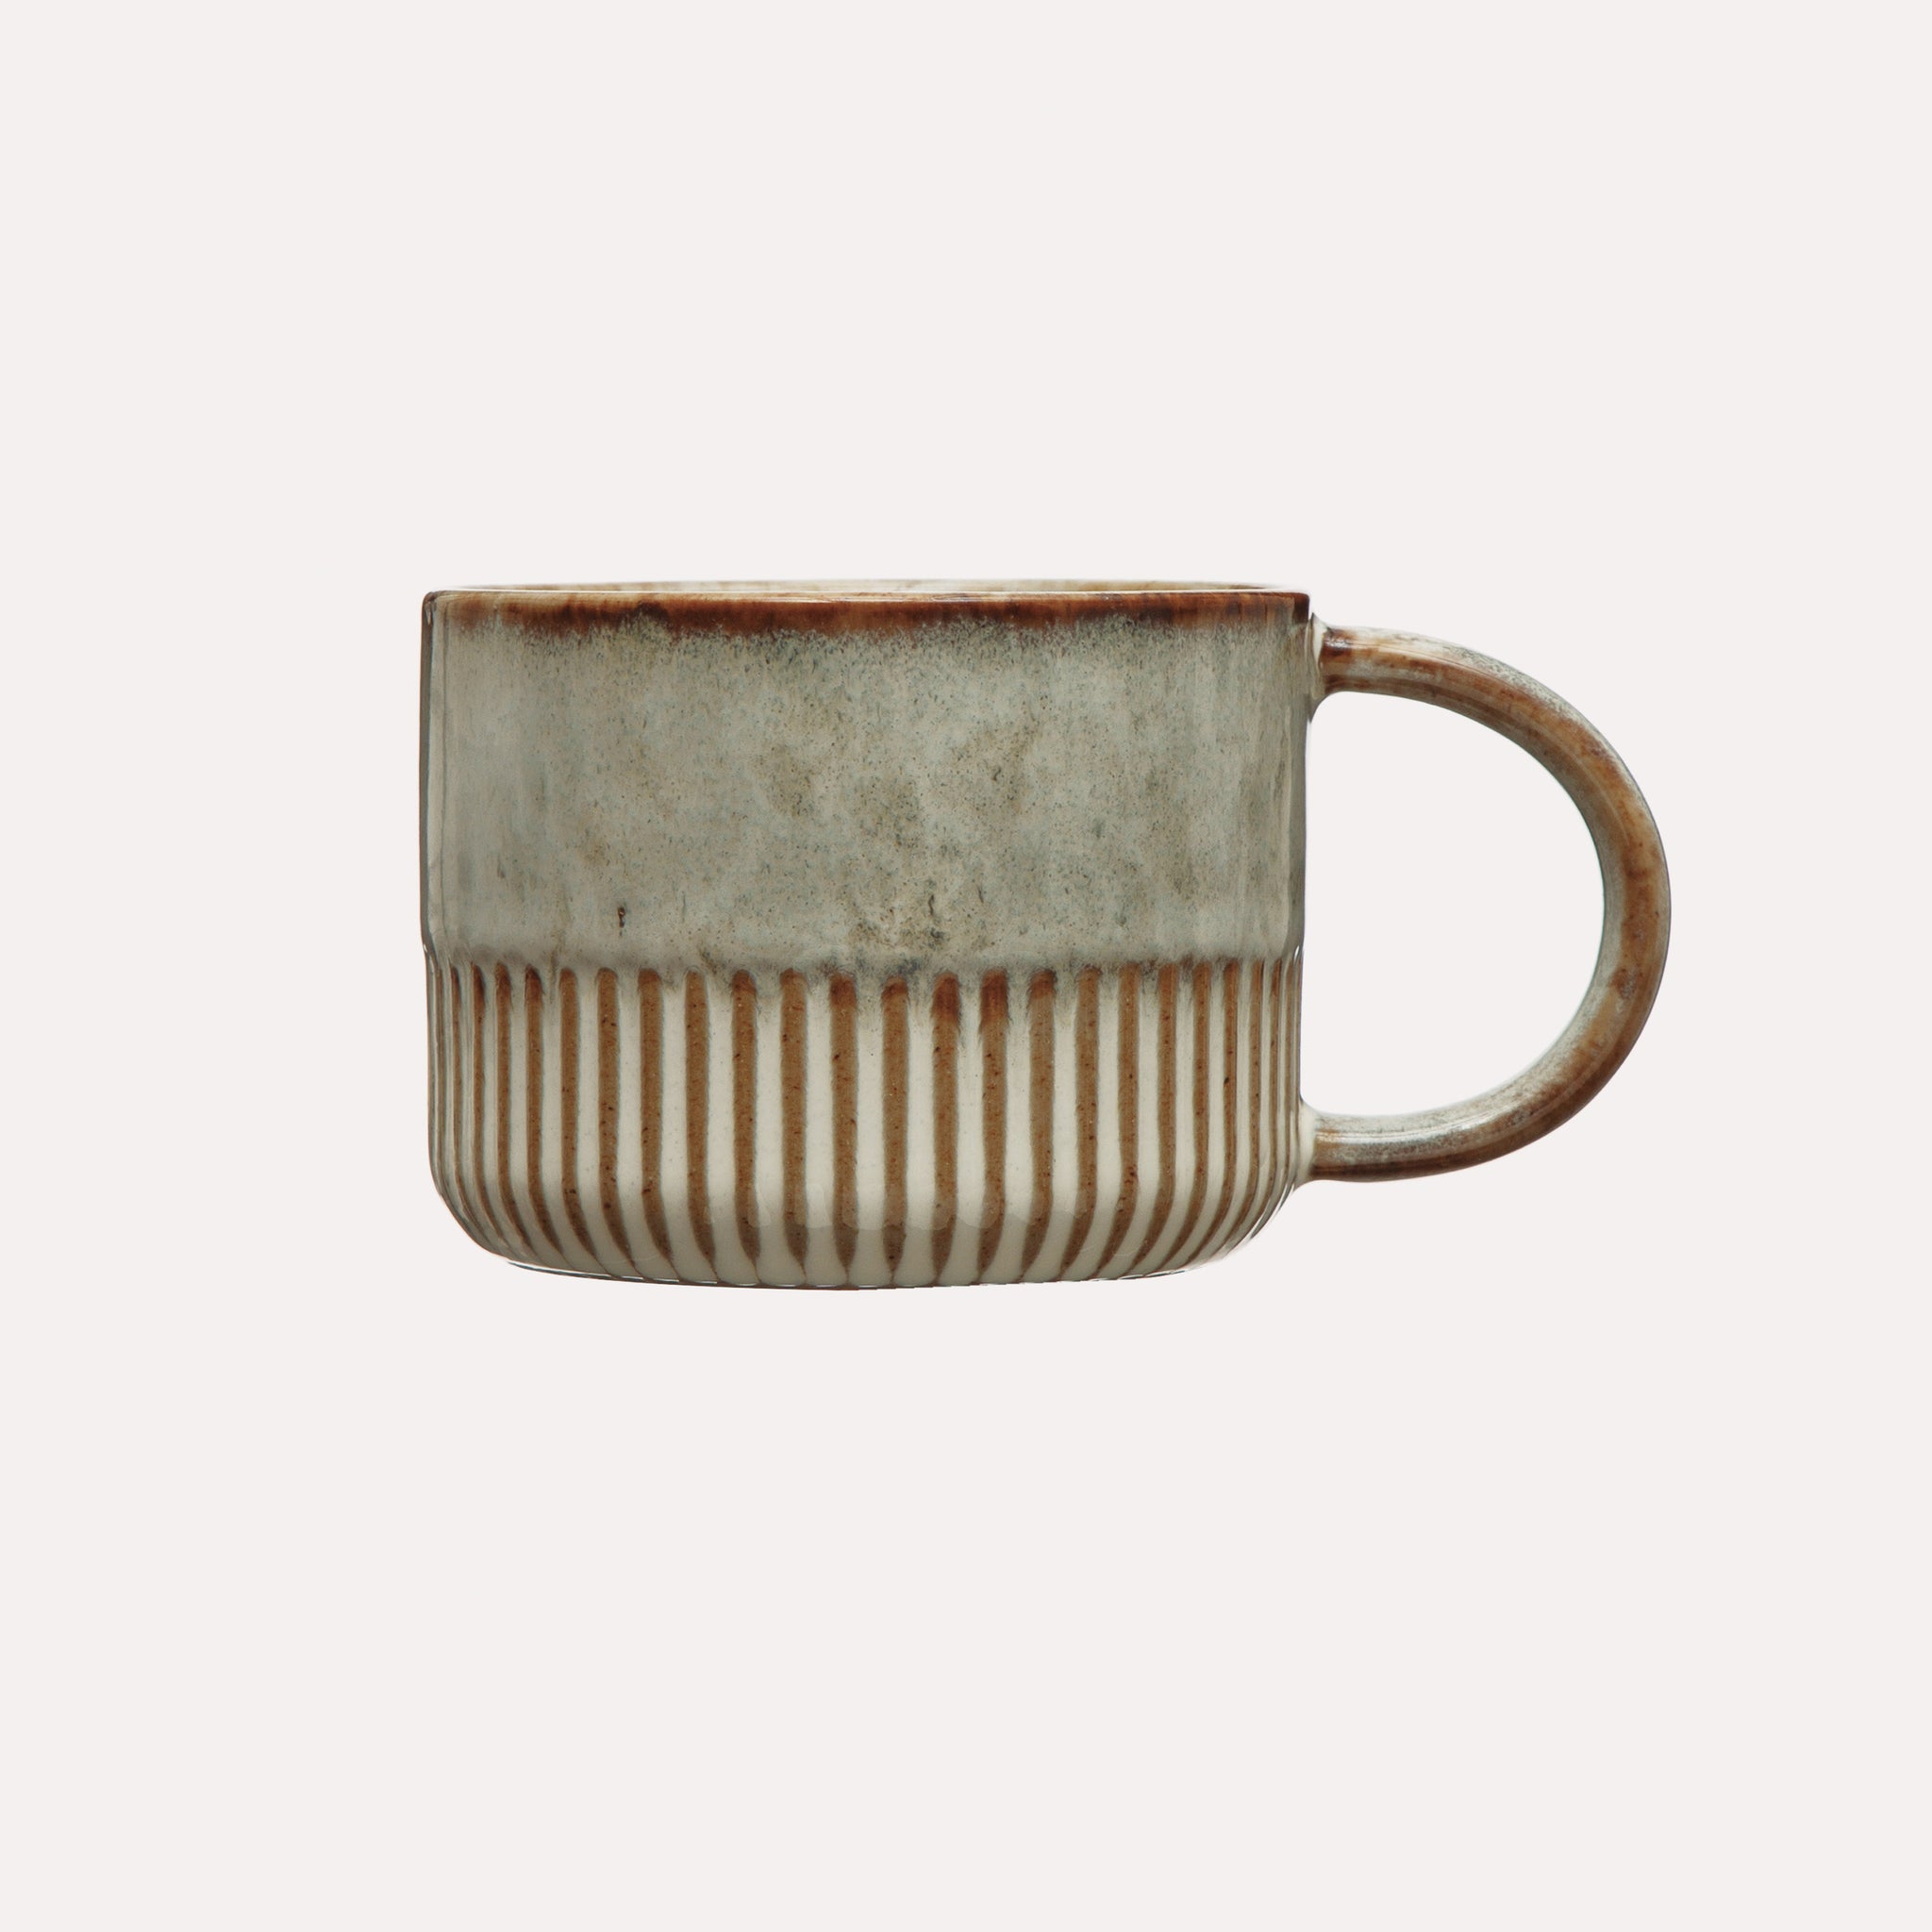 14 oz. Glazed Stoneware Mug with Crimped Bottom